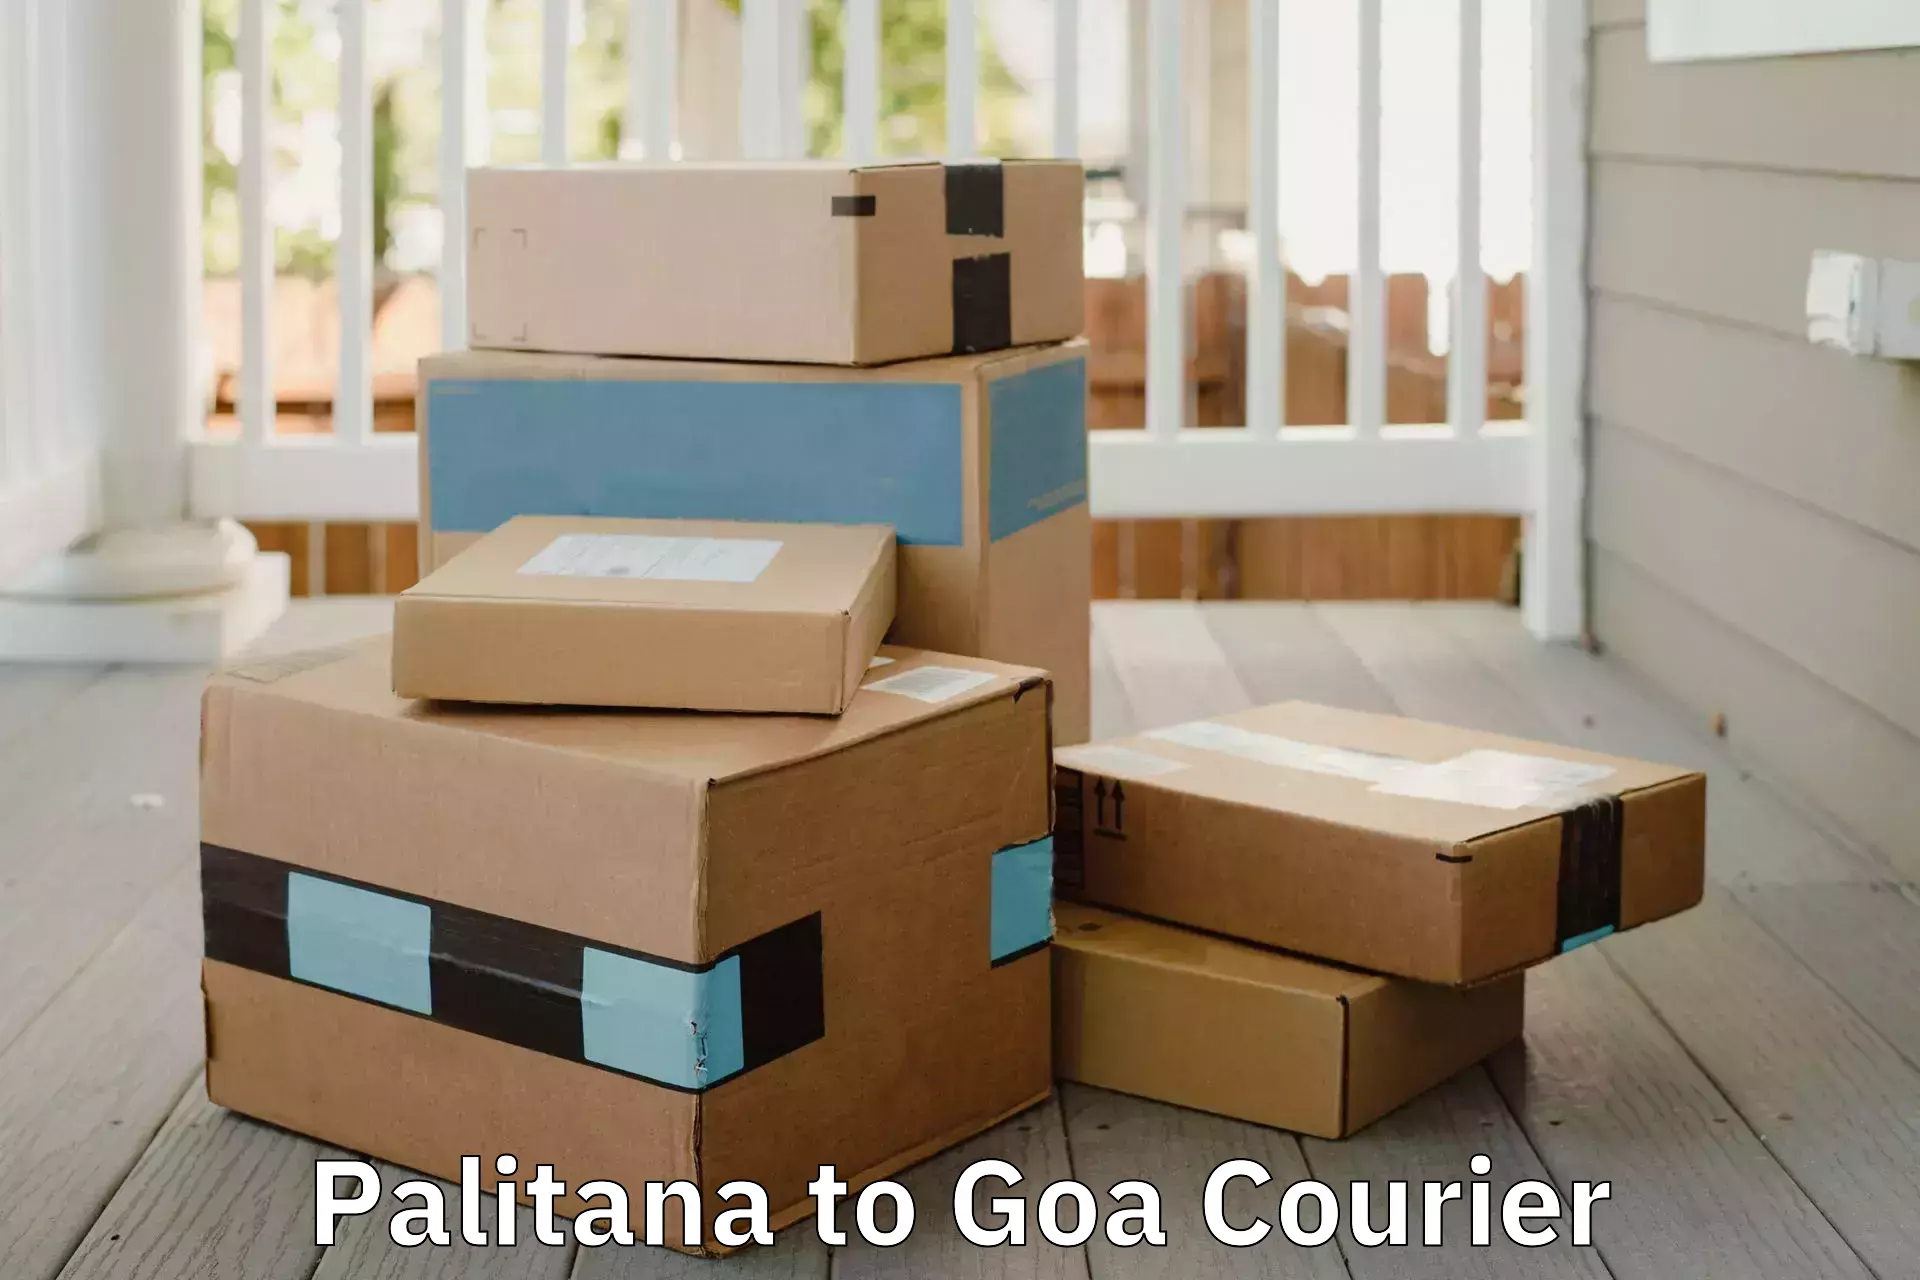 Quality moving company Palitana to Goa